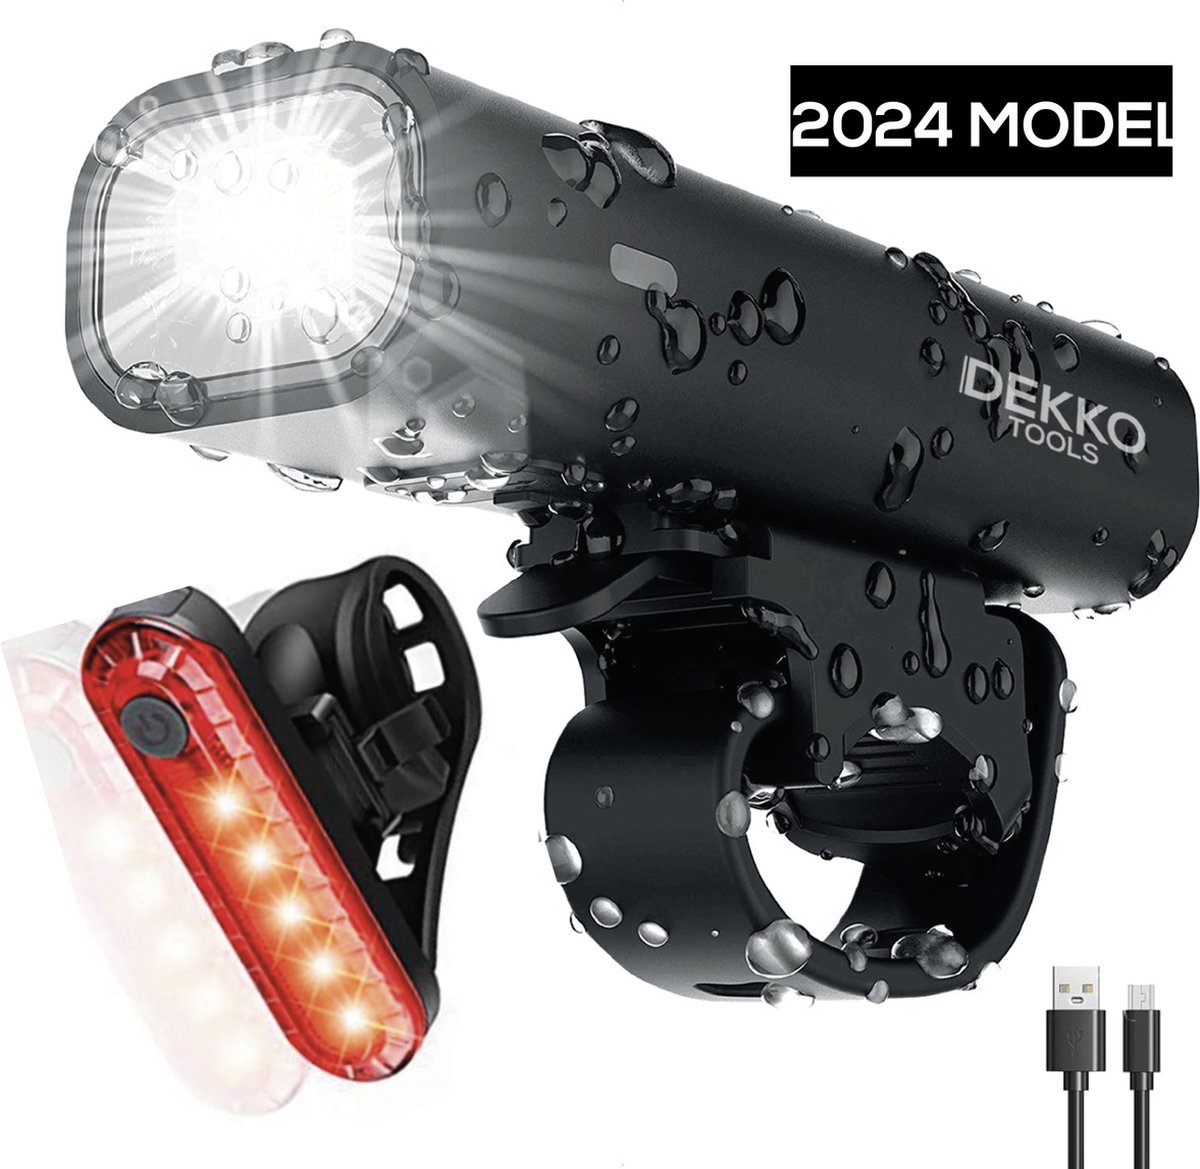 Fietsverlichting usb oplaadbaar PRO model 2024 Fietslampje - Racefiets fietslamp - Fietsaccessoires - IP65 waterdicht - DEKKO TOOLS